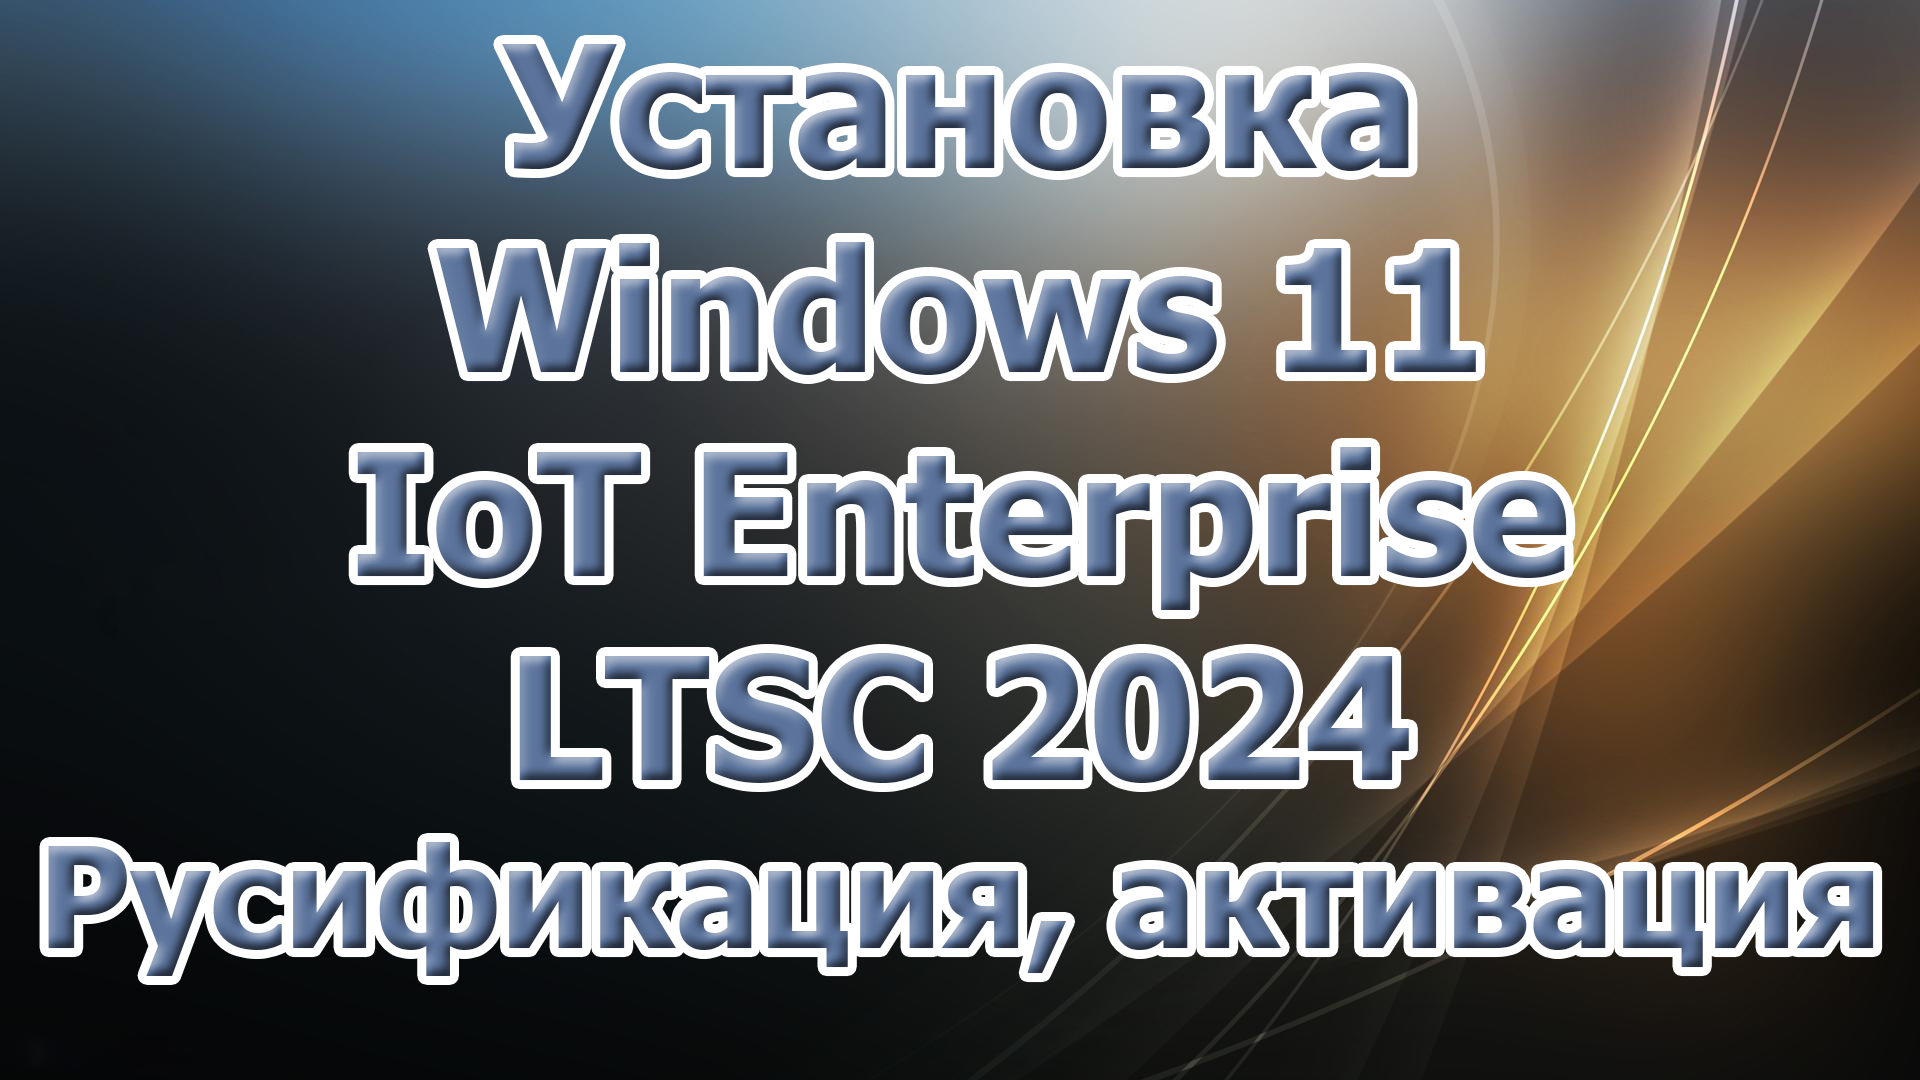 Приглашаю на Boosty. Установка Windows 11 IoT Interprise LTSC. Русификация, активация